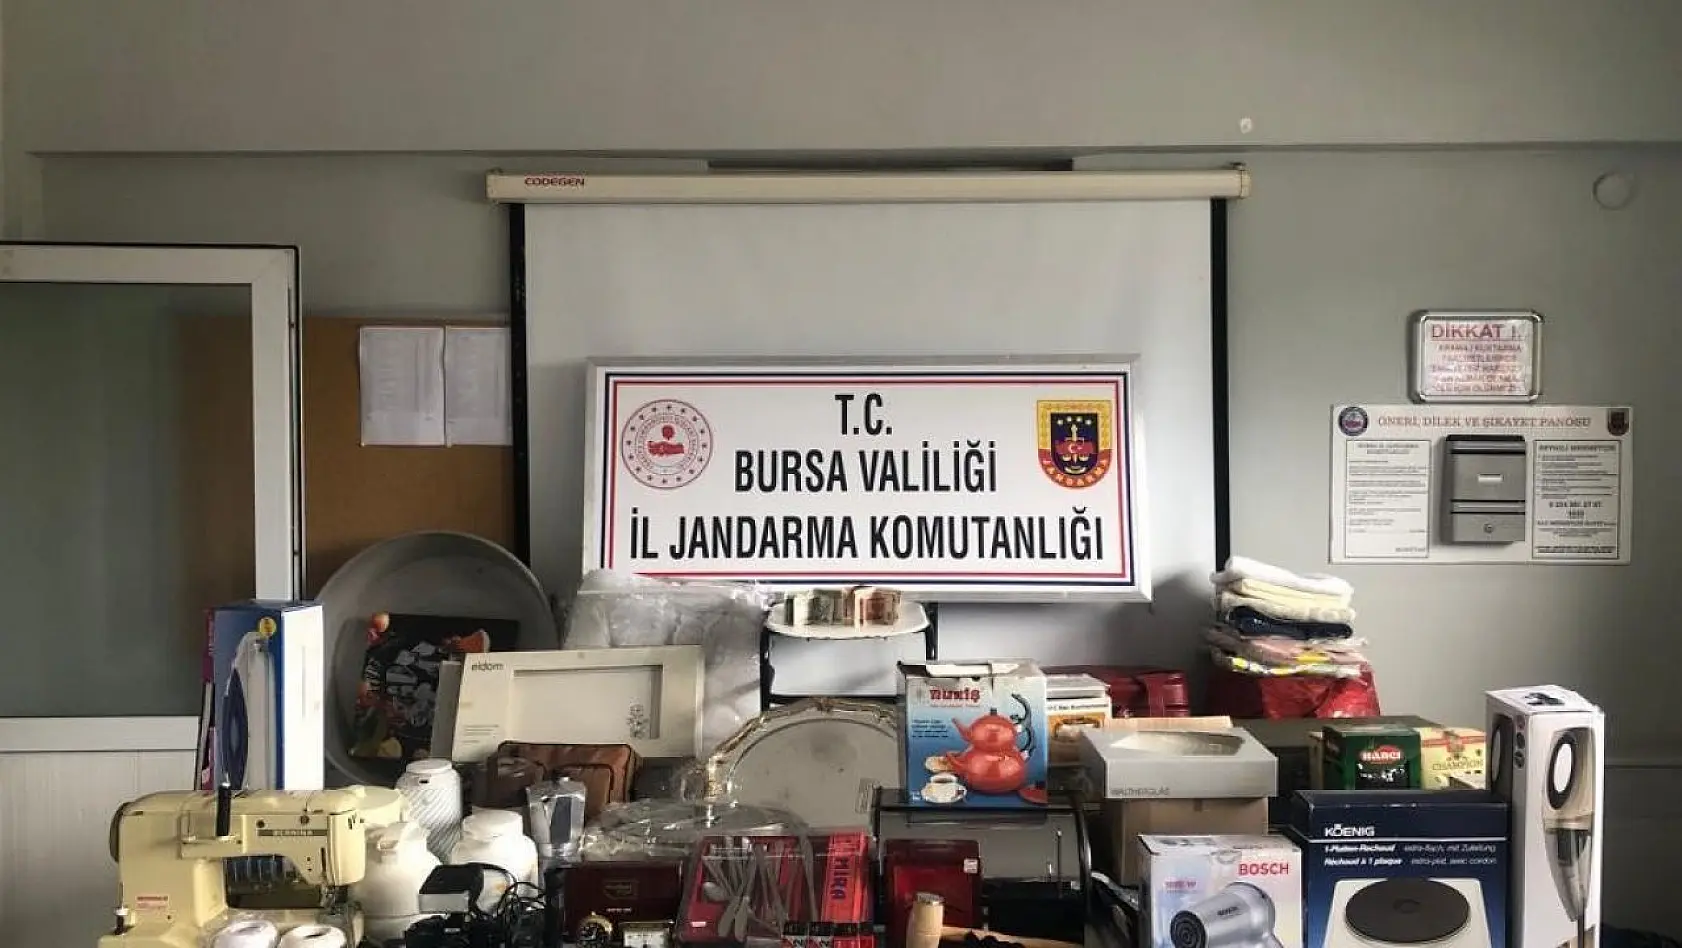 Bursa'da 71 suçtan kaydı olan hırsızlık zanlısı kıskıvrak yakalandı